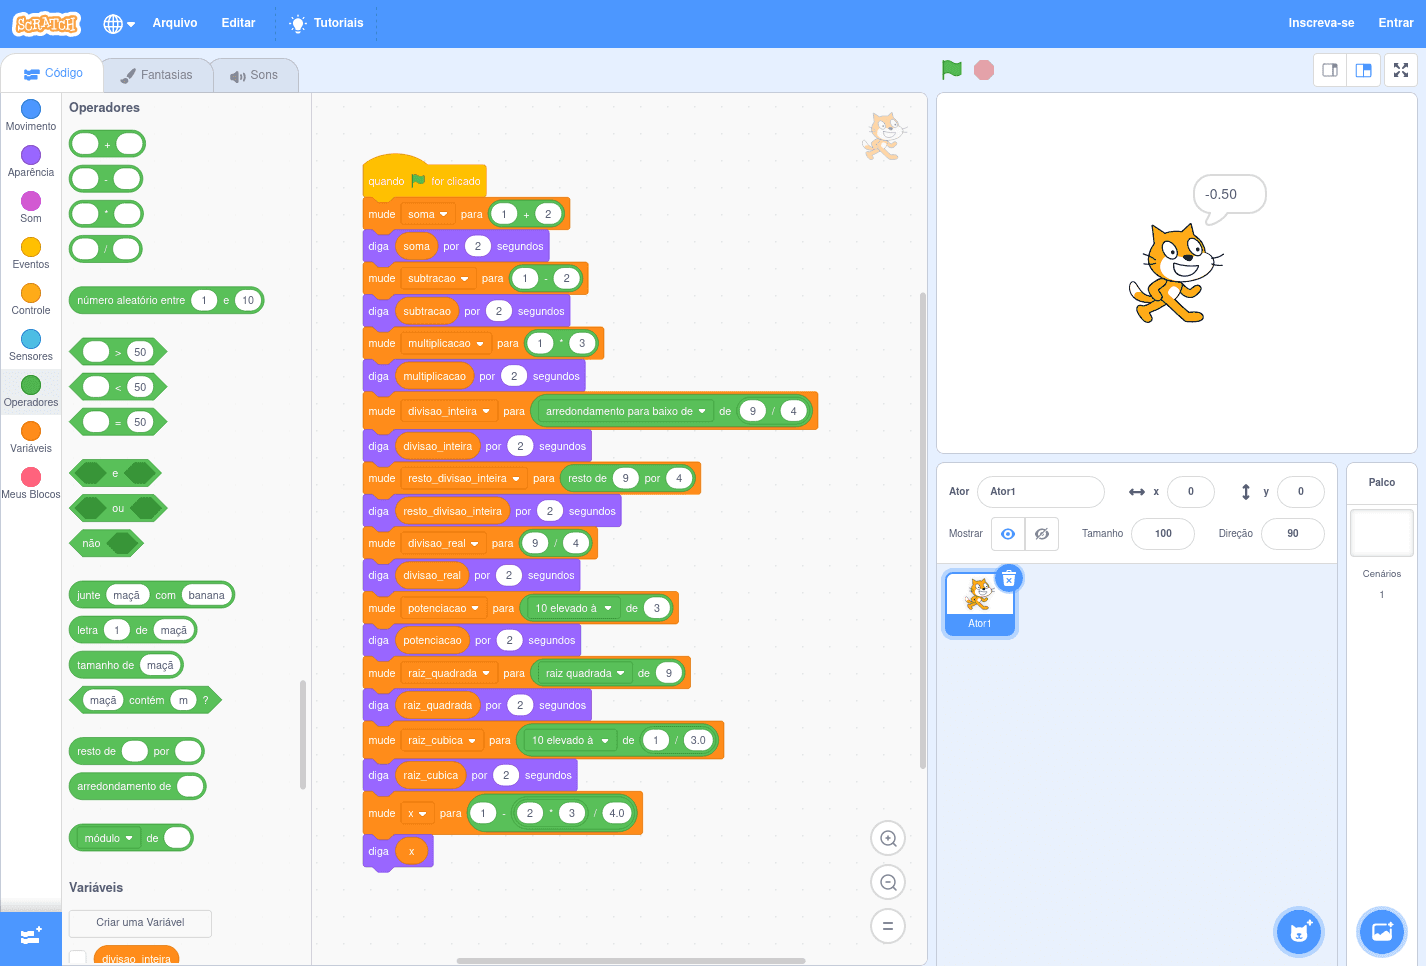 Exemplo de operações aritméticas básicas em Scratch: soma, subtração, multiplicação, divisão inteira, resto de divisão inteira, divisão real, potenciação, raiz quadrada, raiz cúbica e cálculo de uma expressão.